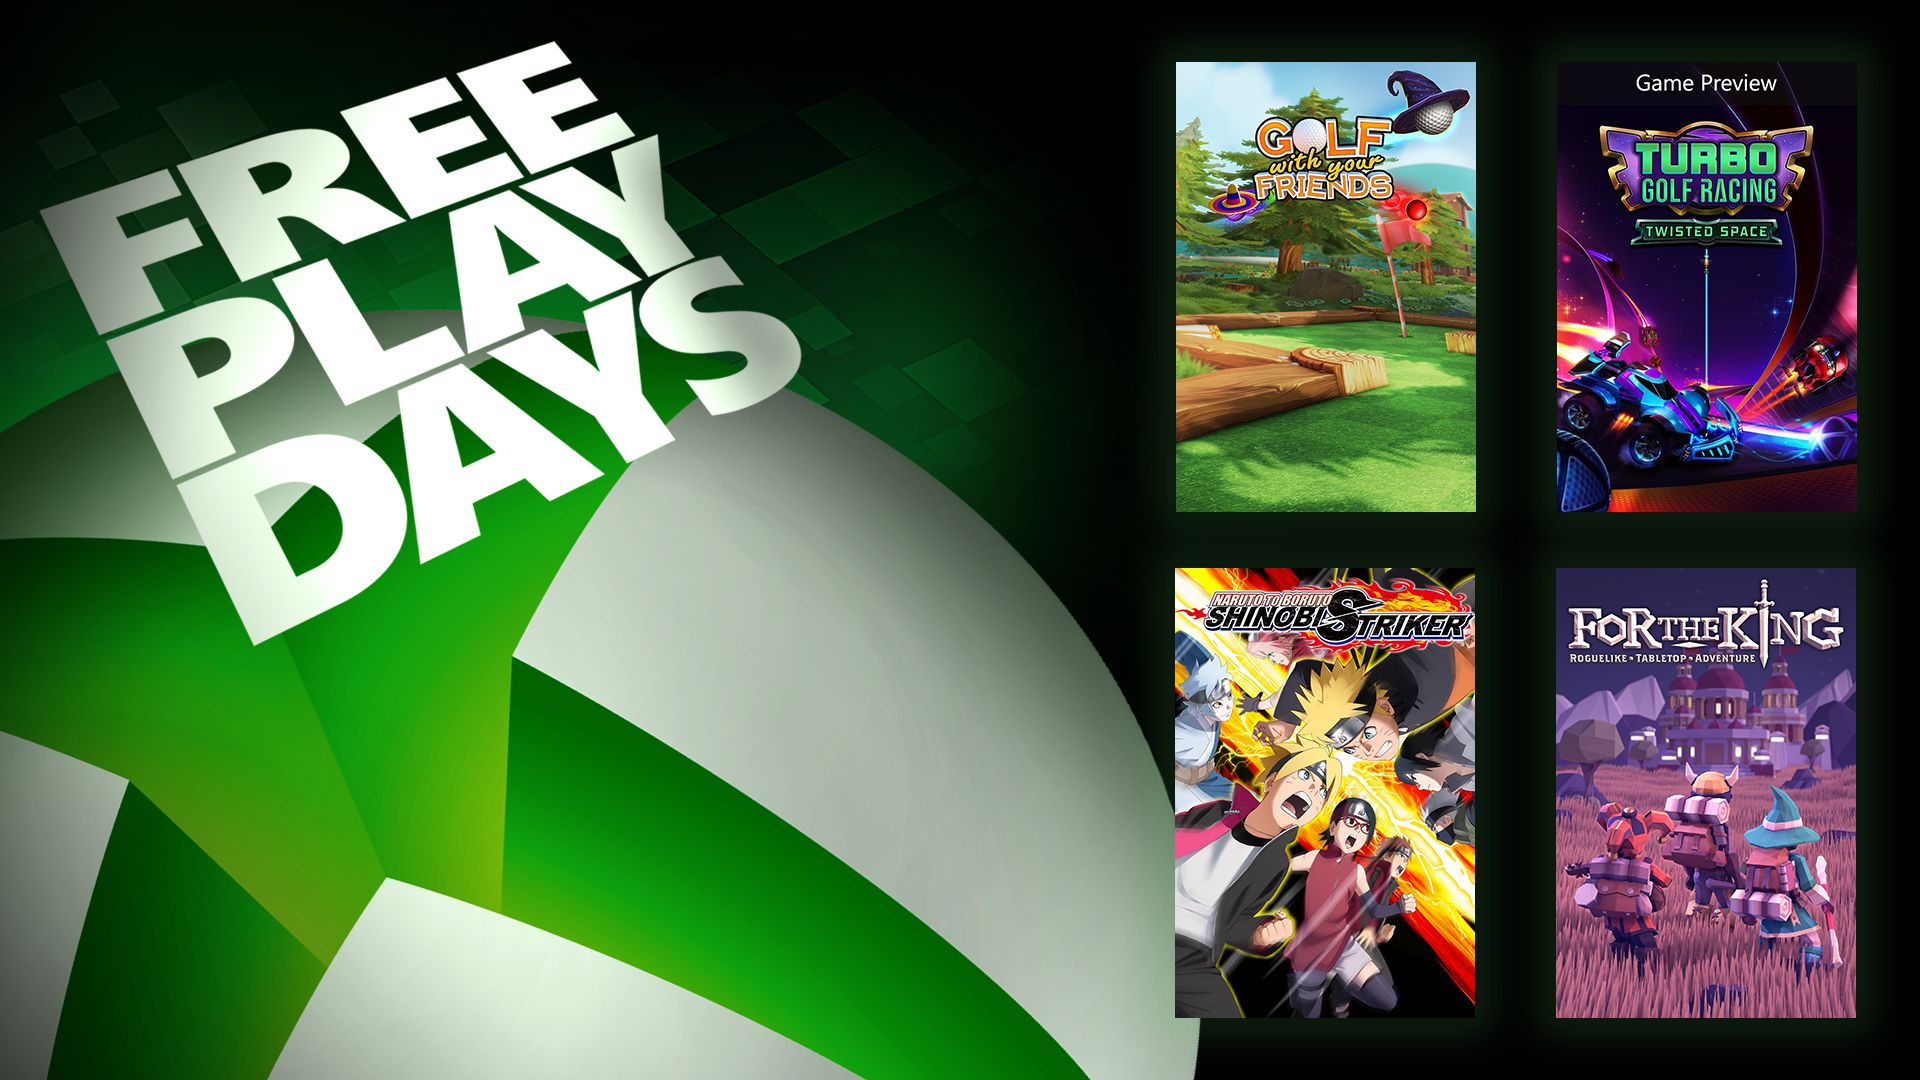 Free Play Days - May 4